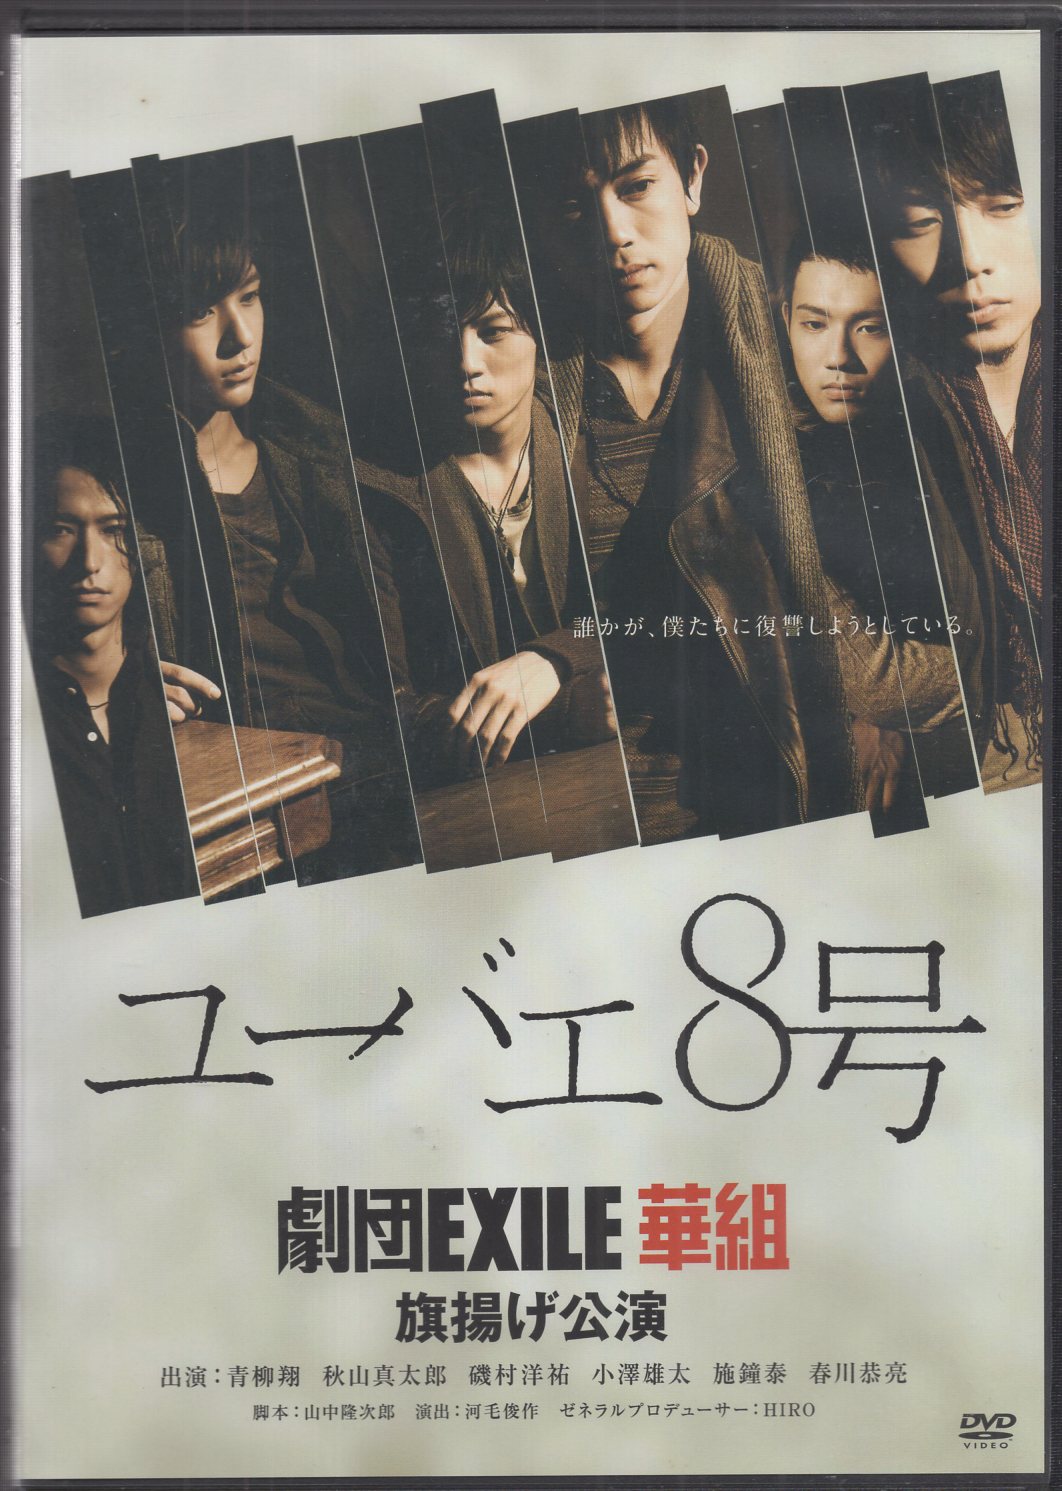 劇団EXILE 華組 ユーバエ8号 DVD - ブルーレイ